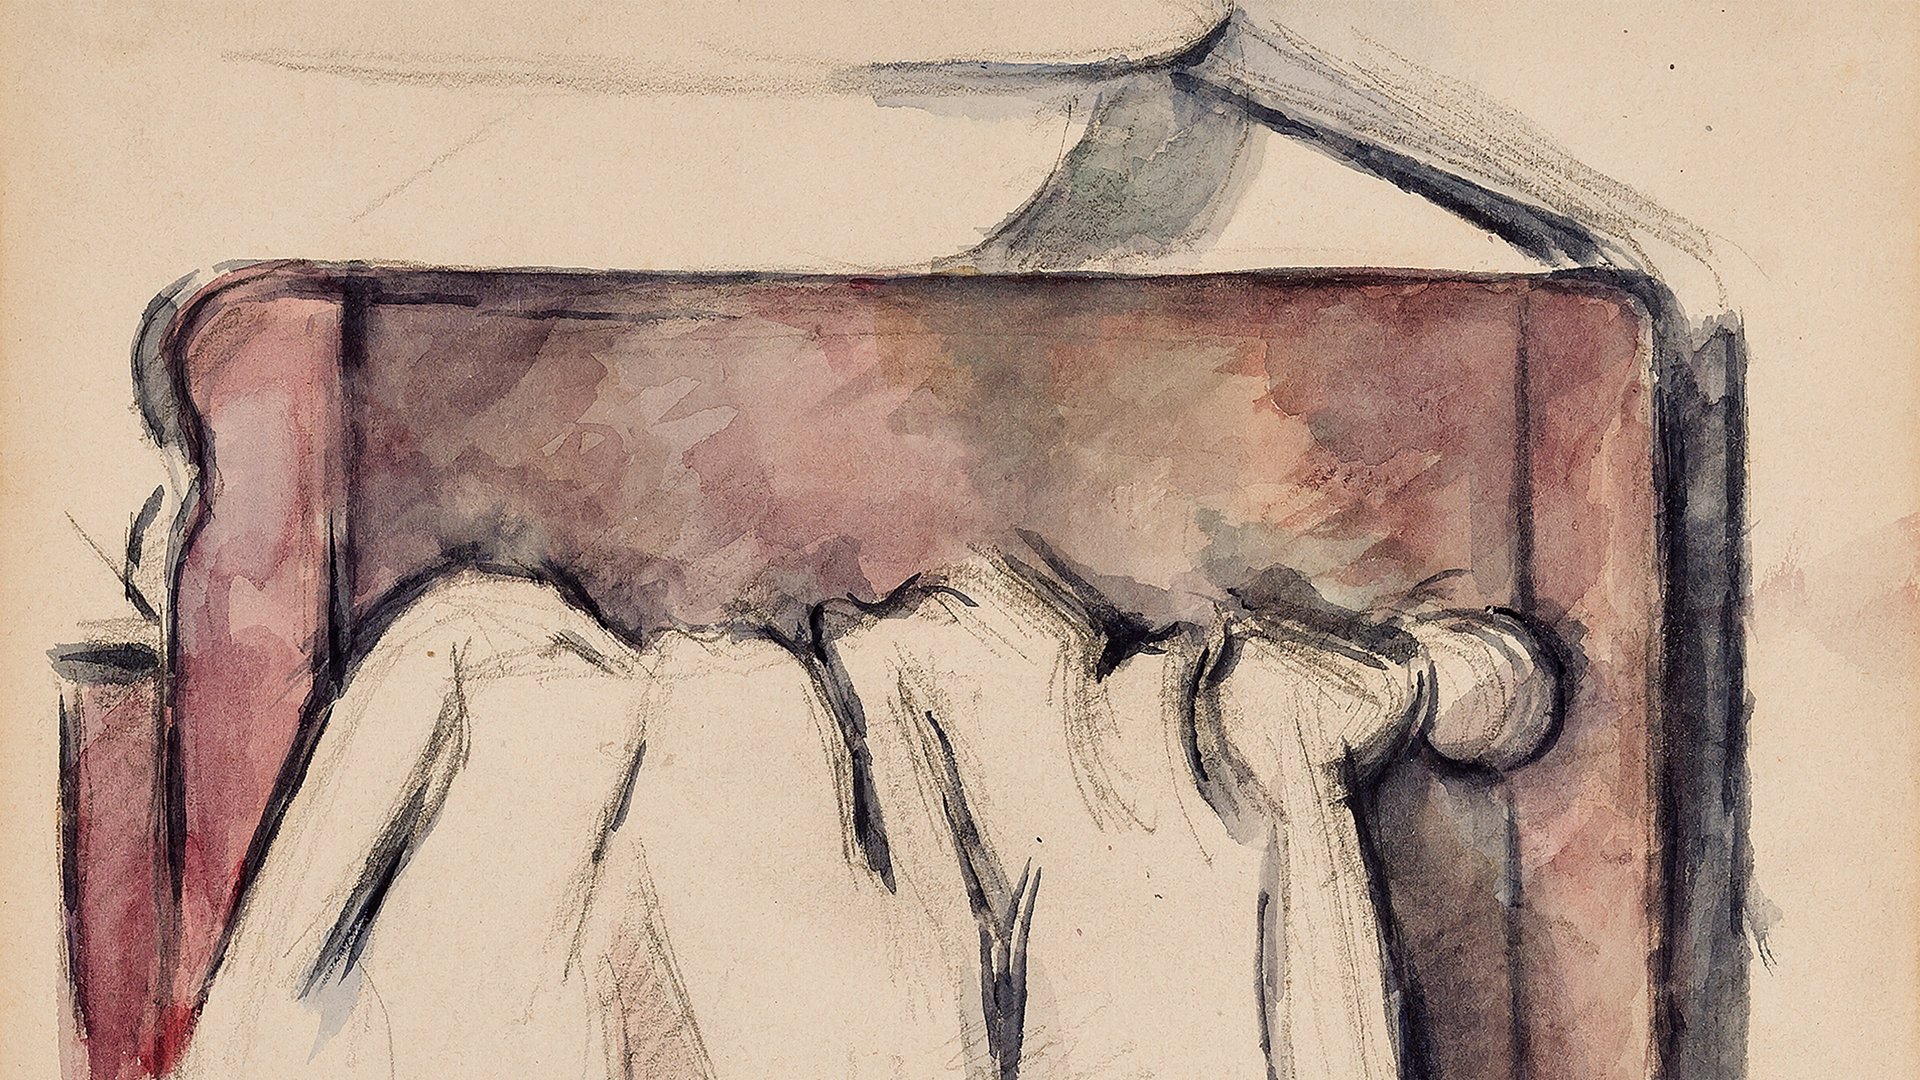 Abbildung des Werks "Toilettentisch" des Künstlers Paul Cézanne, das in der Ausstellung "Cézannes Handtuch" vom 29. Oktober 2017 bis 11. Februar 2018 in der Jungen Kunsthalle Karlsruhe zu sehen war.